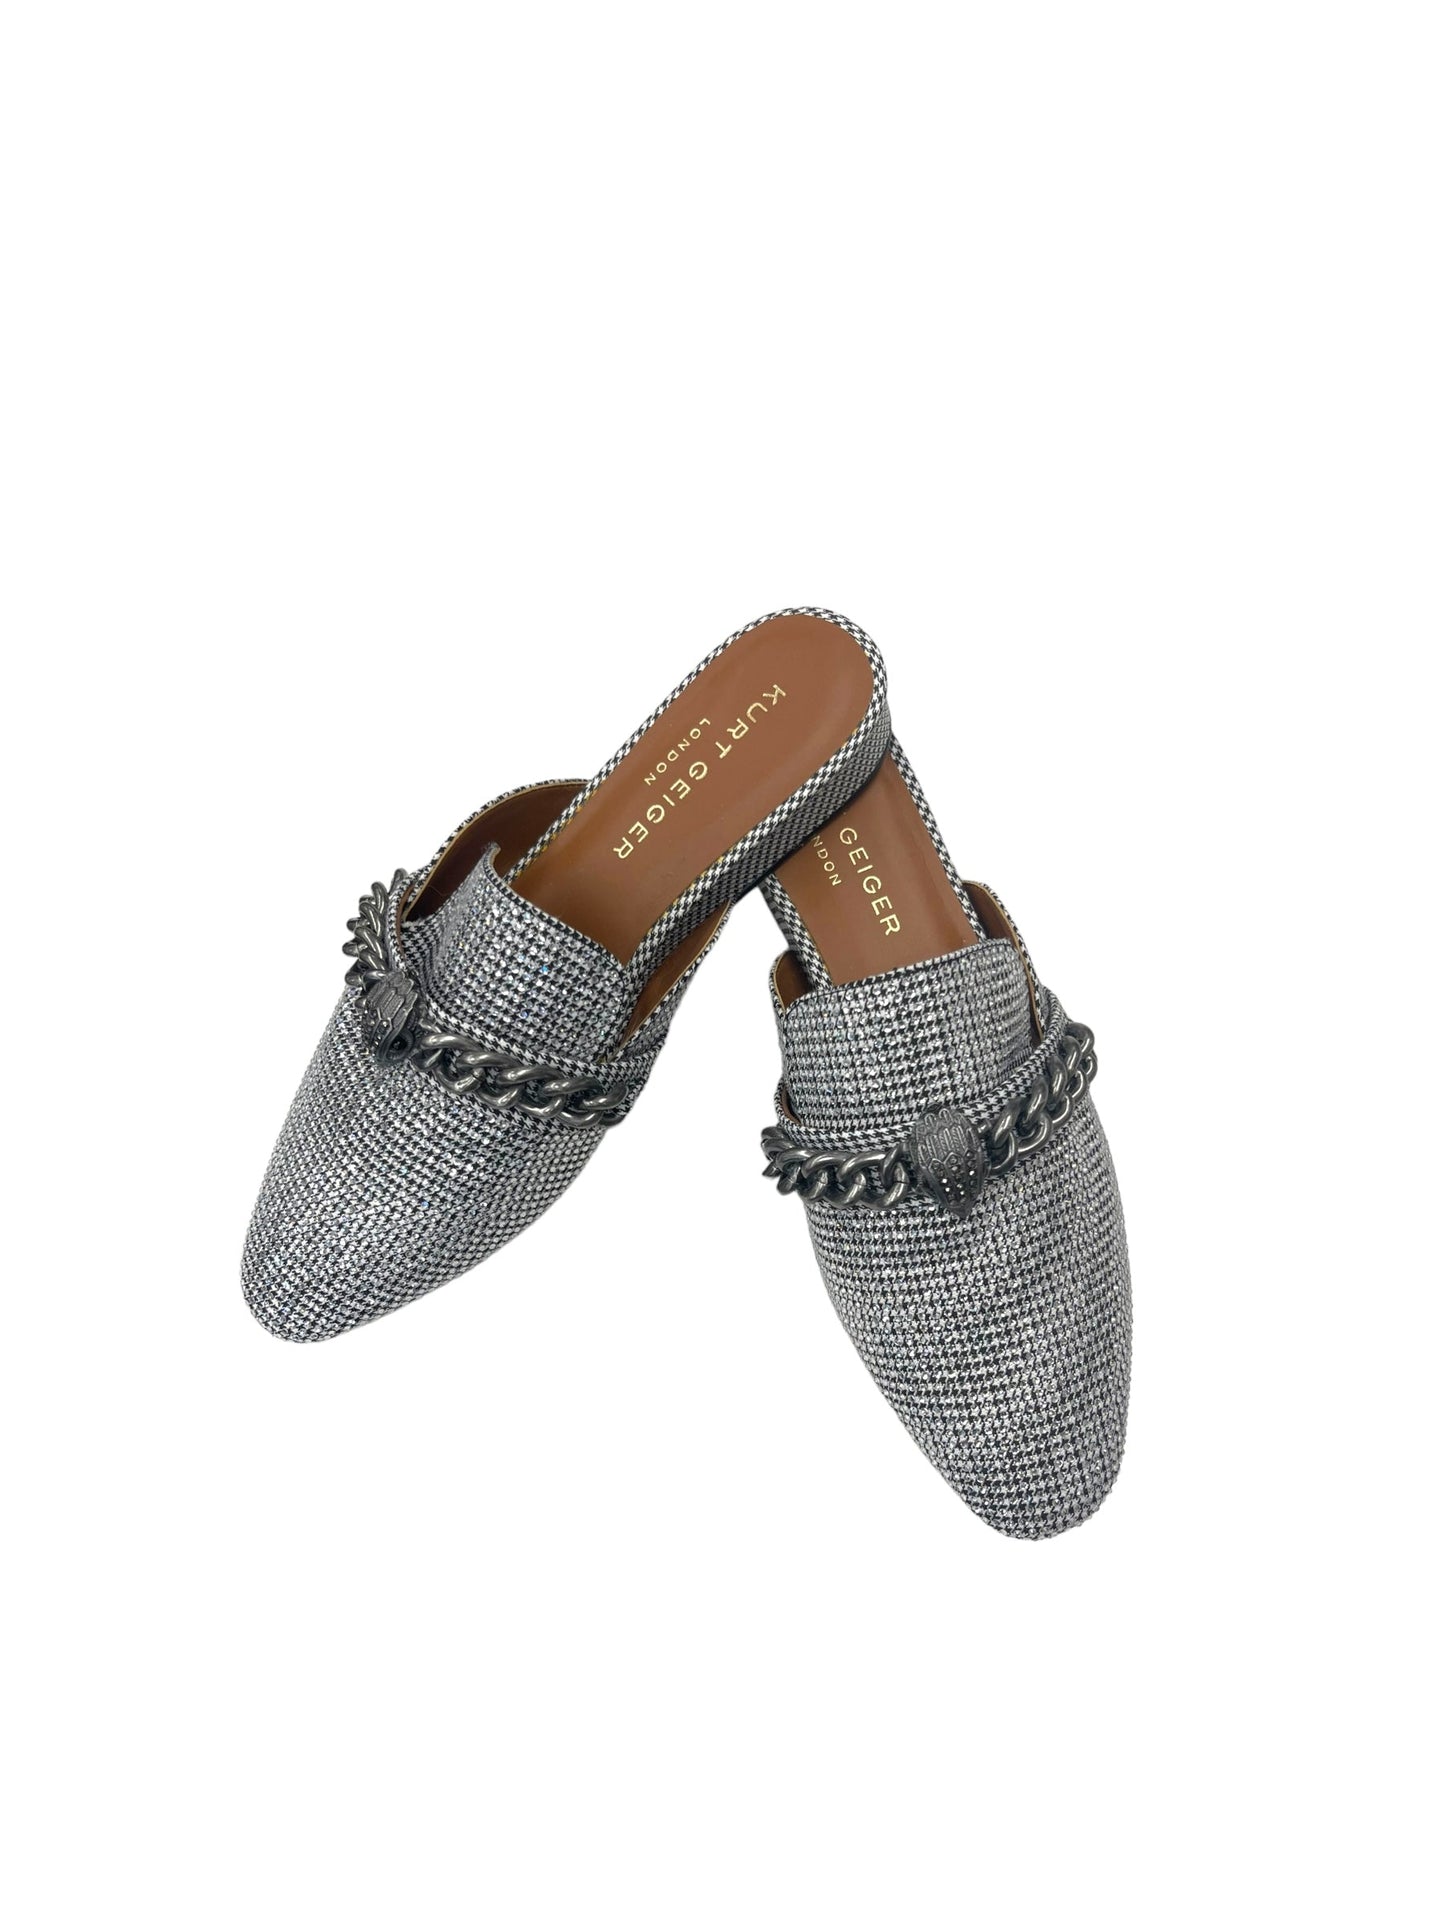 Silver Shoes Flats Kurt Geiger London, Size 8.5